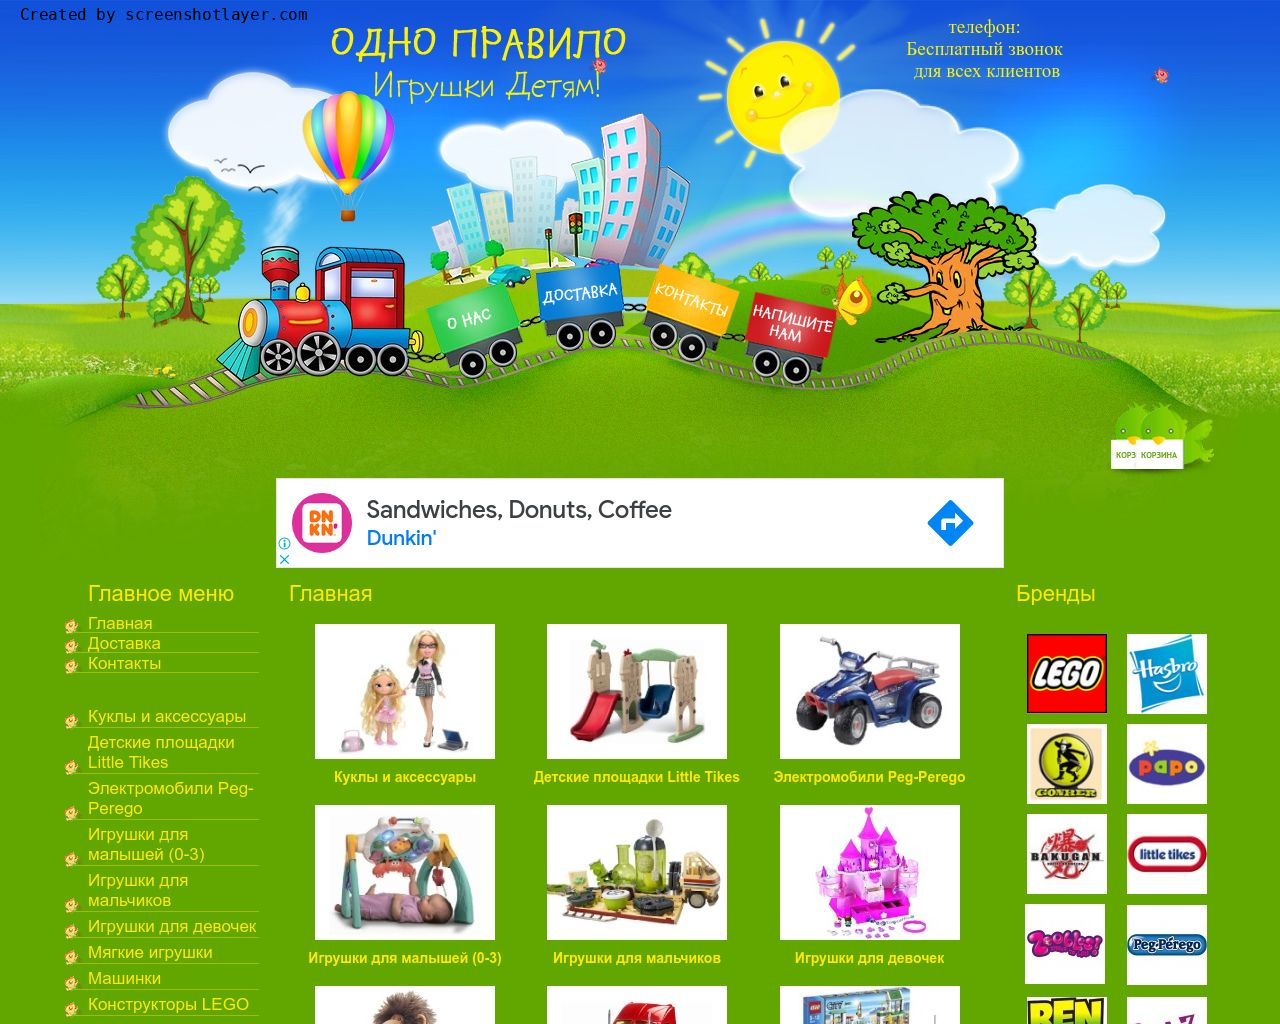 Изображение сайта odno-pravilo.ru в разрешении 1280x1024